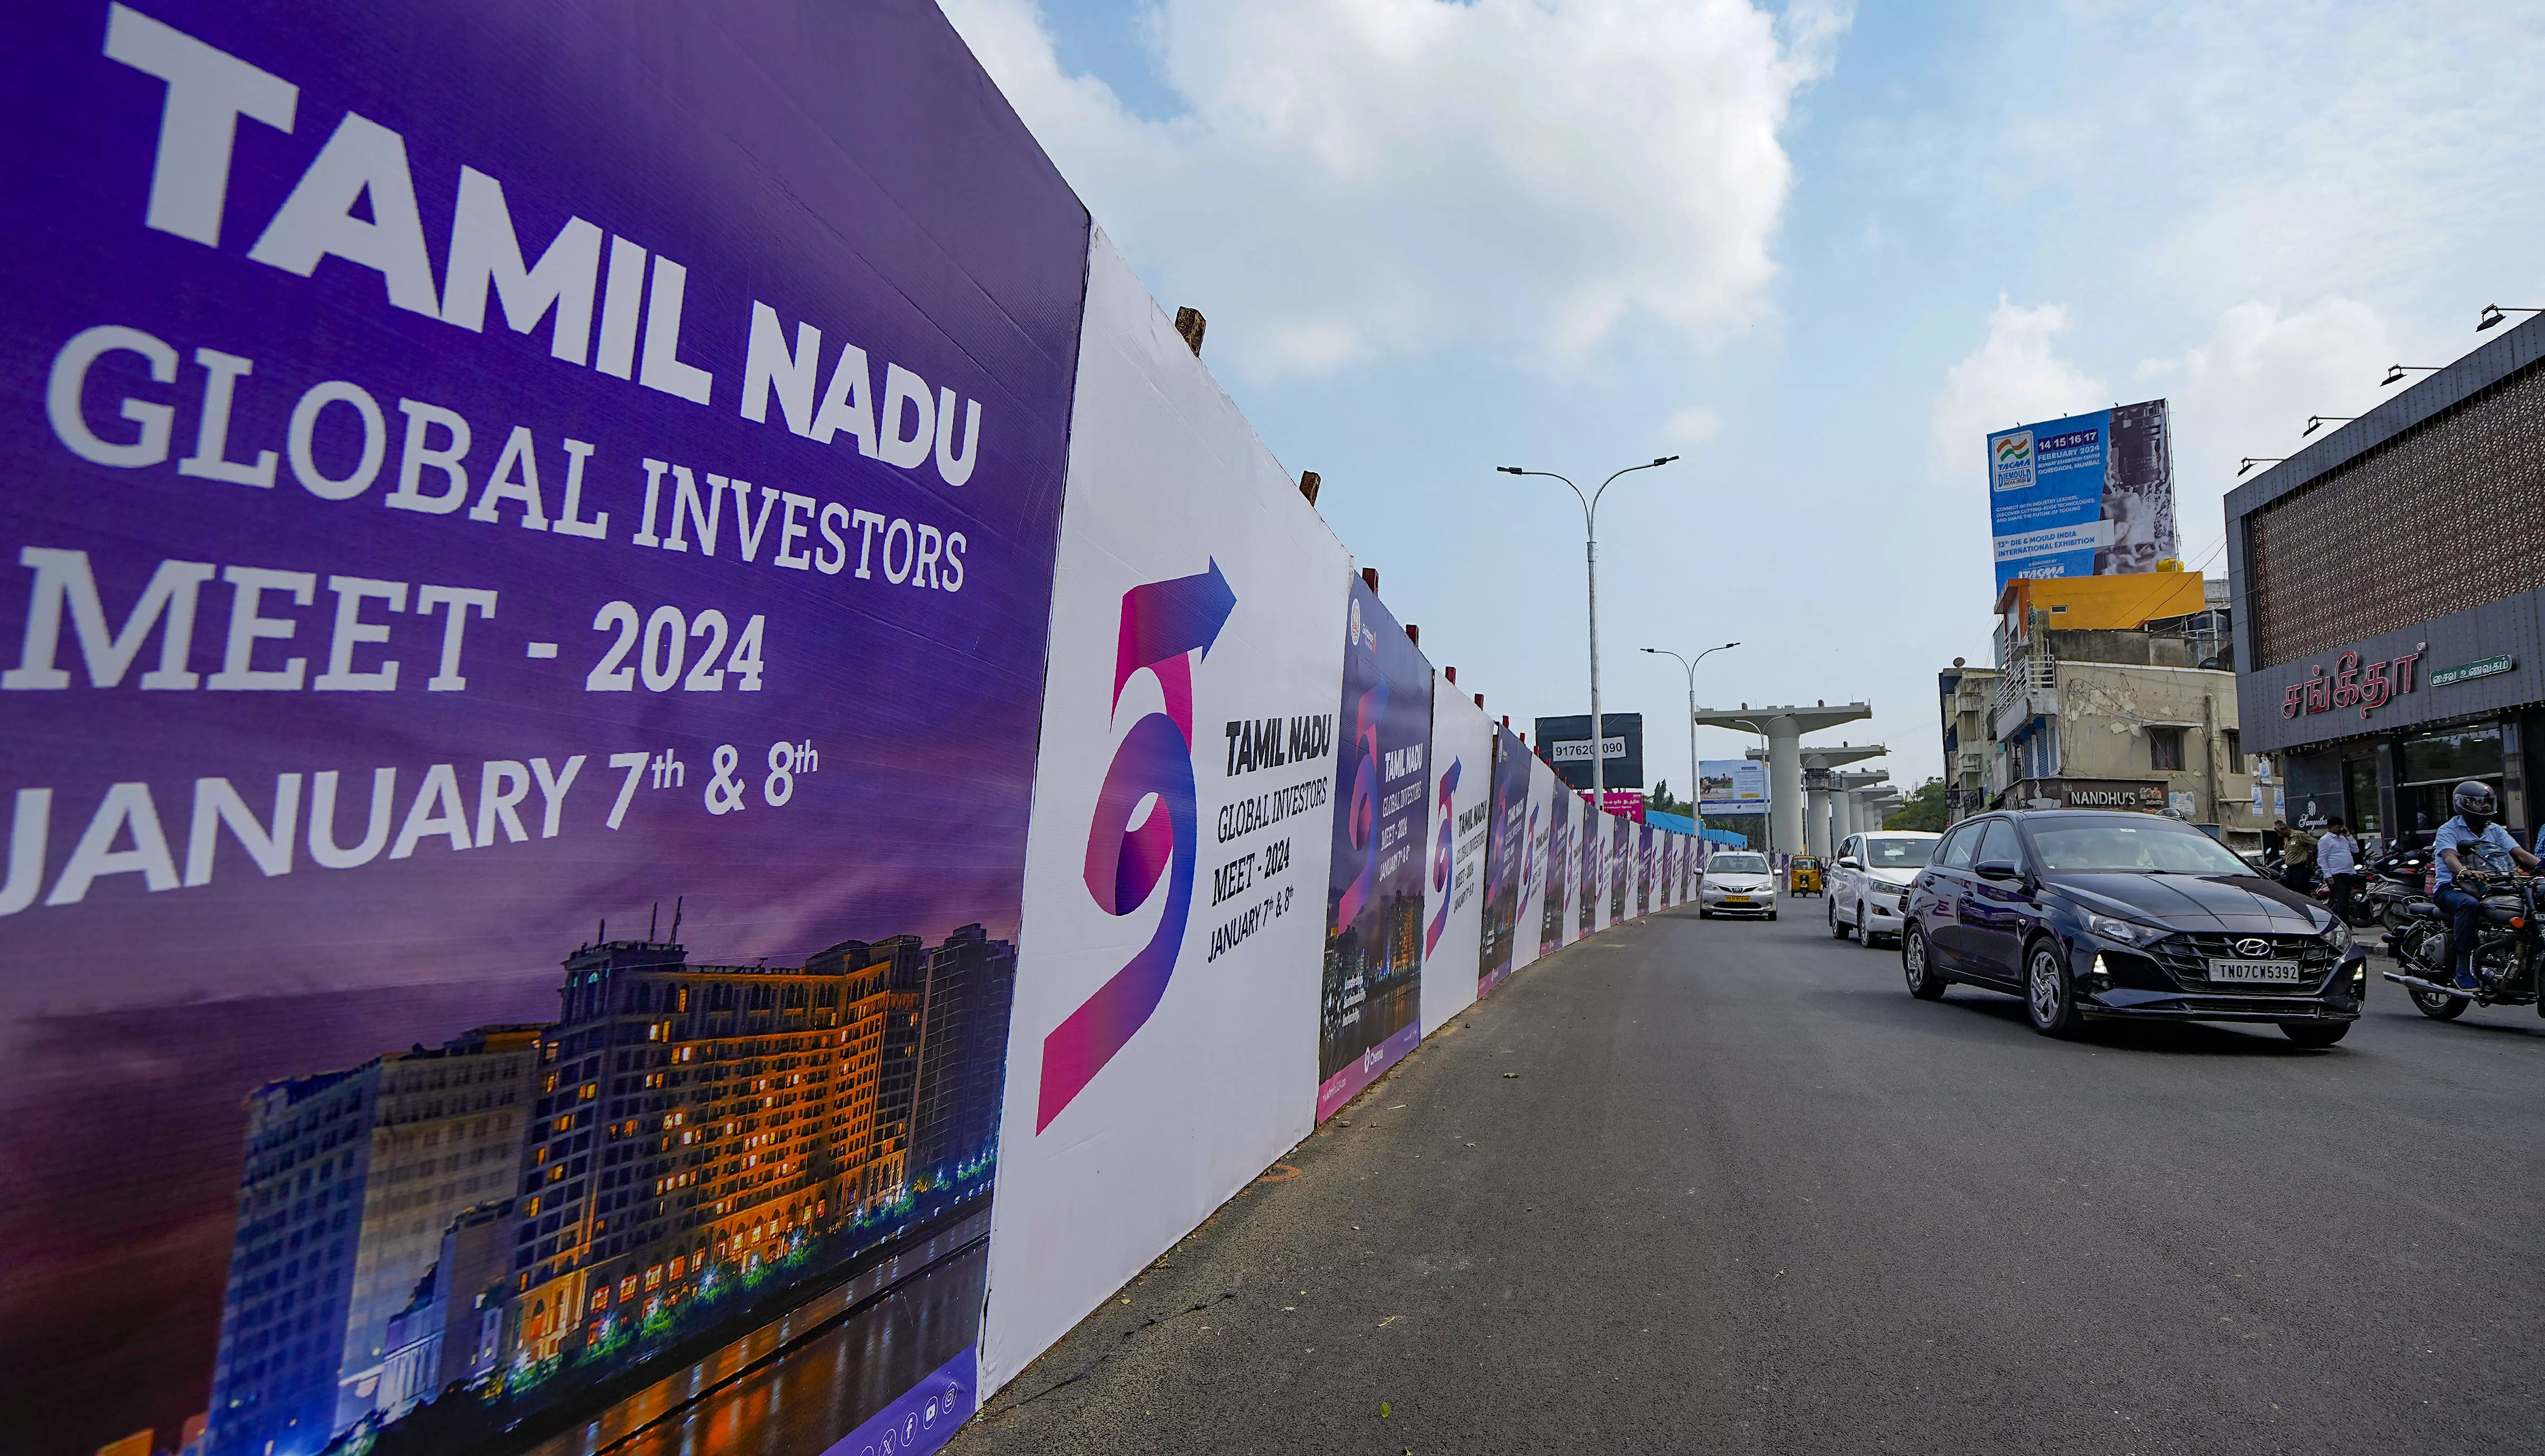 Tamil Nadu govt’s 3rd Global Investors Meet set to begin on Jan 7